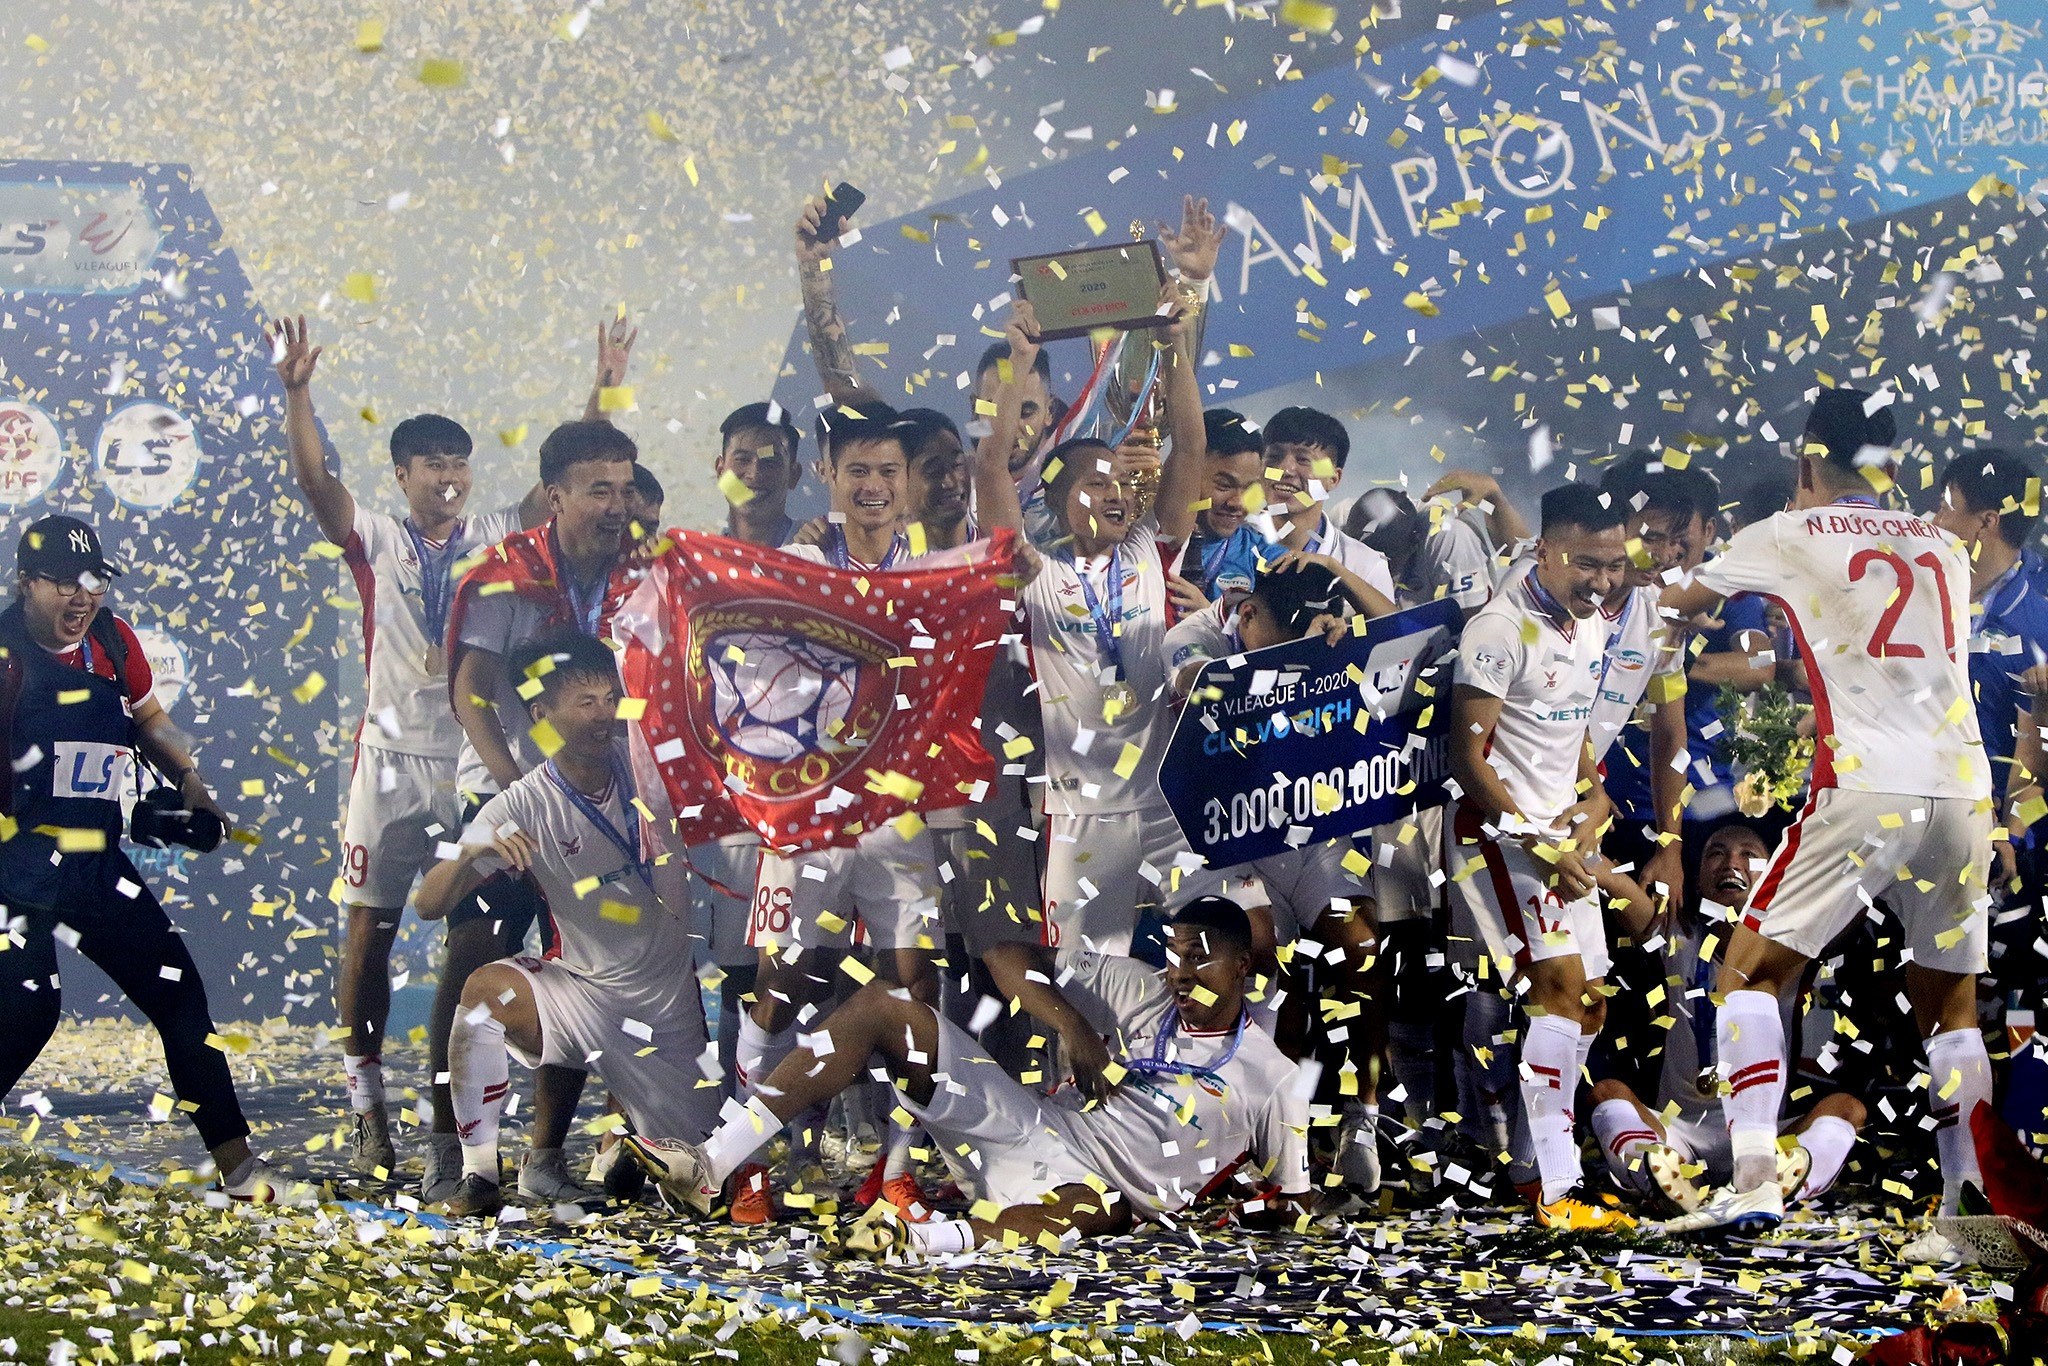 Cảm xúc vỡ hòa của CLB Viettel, Với chức vô địch V.League 2020, Viettel đại diện cho bóng đá Việt Nam dự AFC Champions League mùa sau. Hà Nội và CLB Sài Gòn sẽ tranh tài ở AFC Cup. Ảnh: Hoàng Tùng